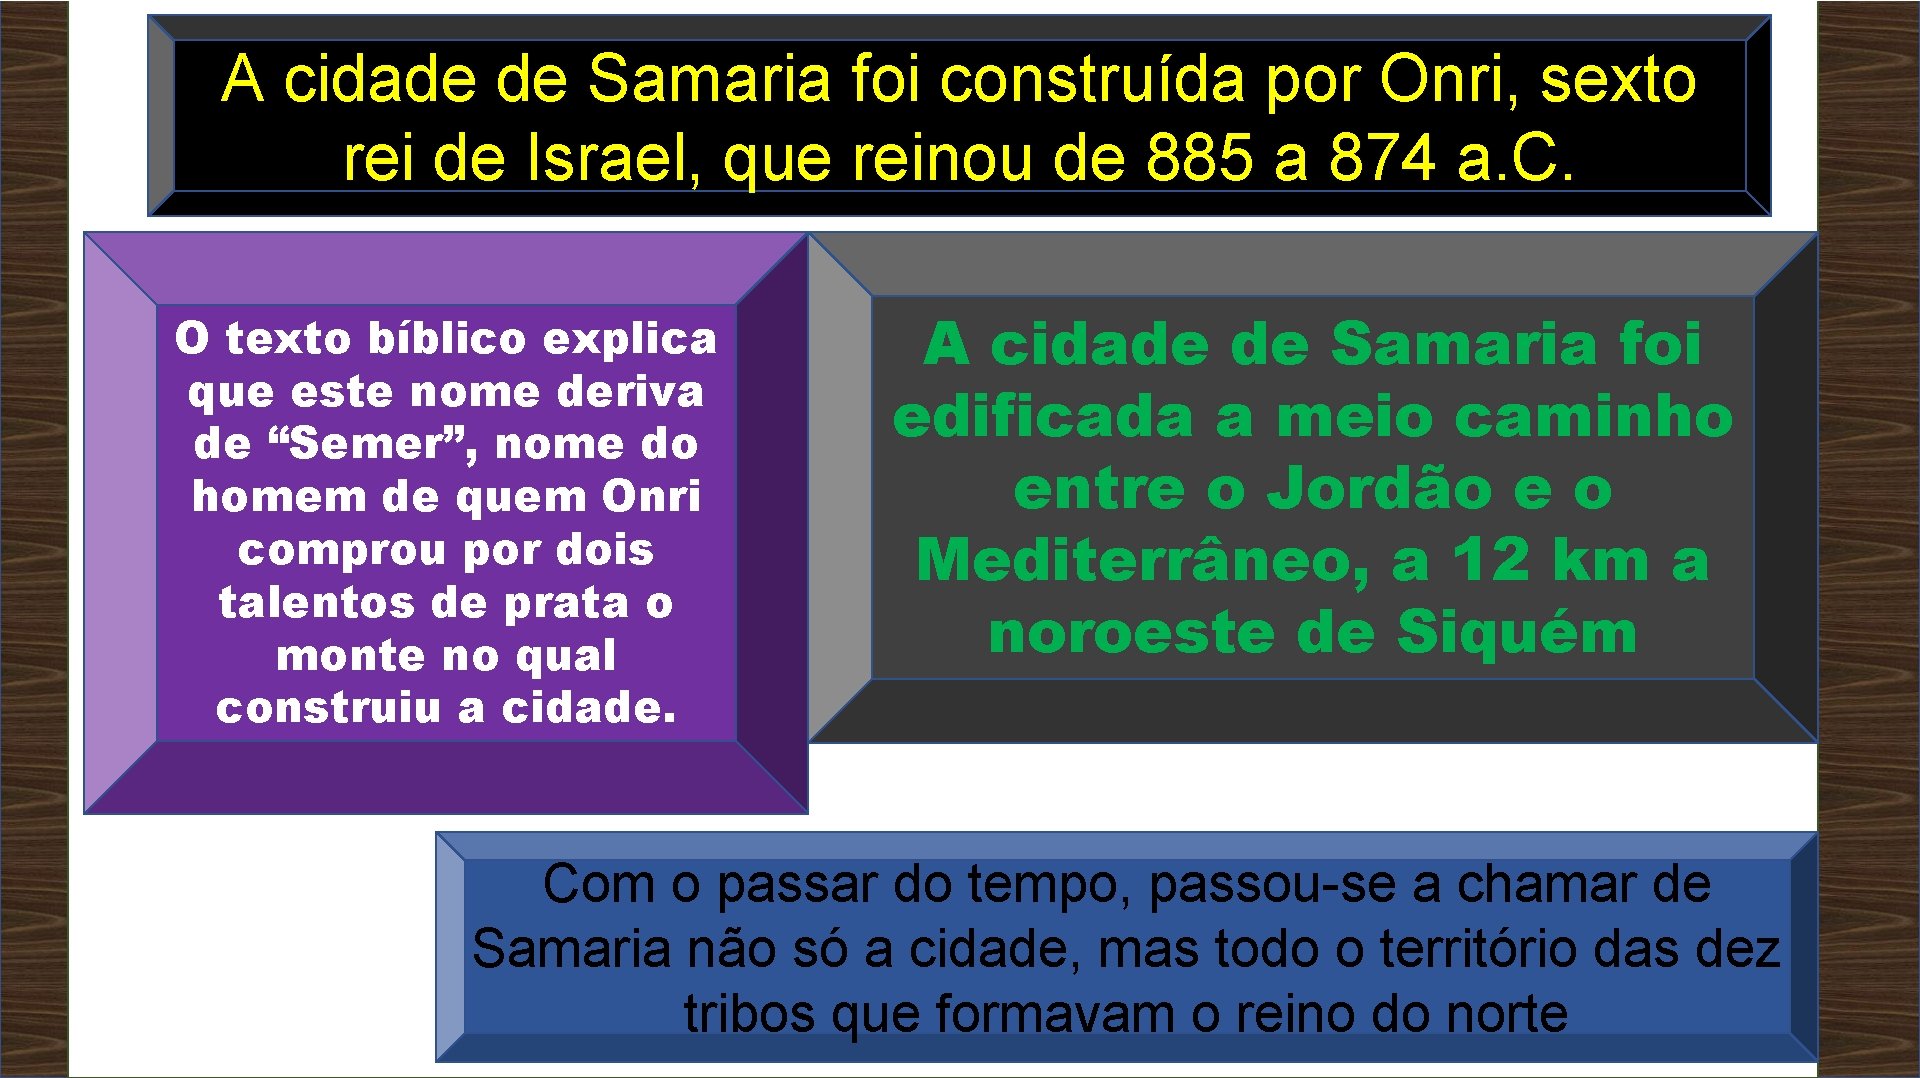 A cidade de Samaria foi construída por Onri, sexto rei de Israel, que reinou